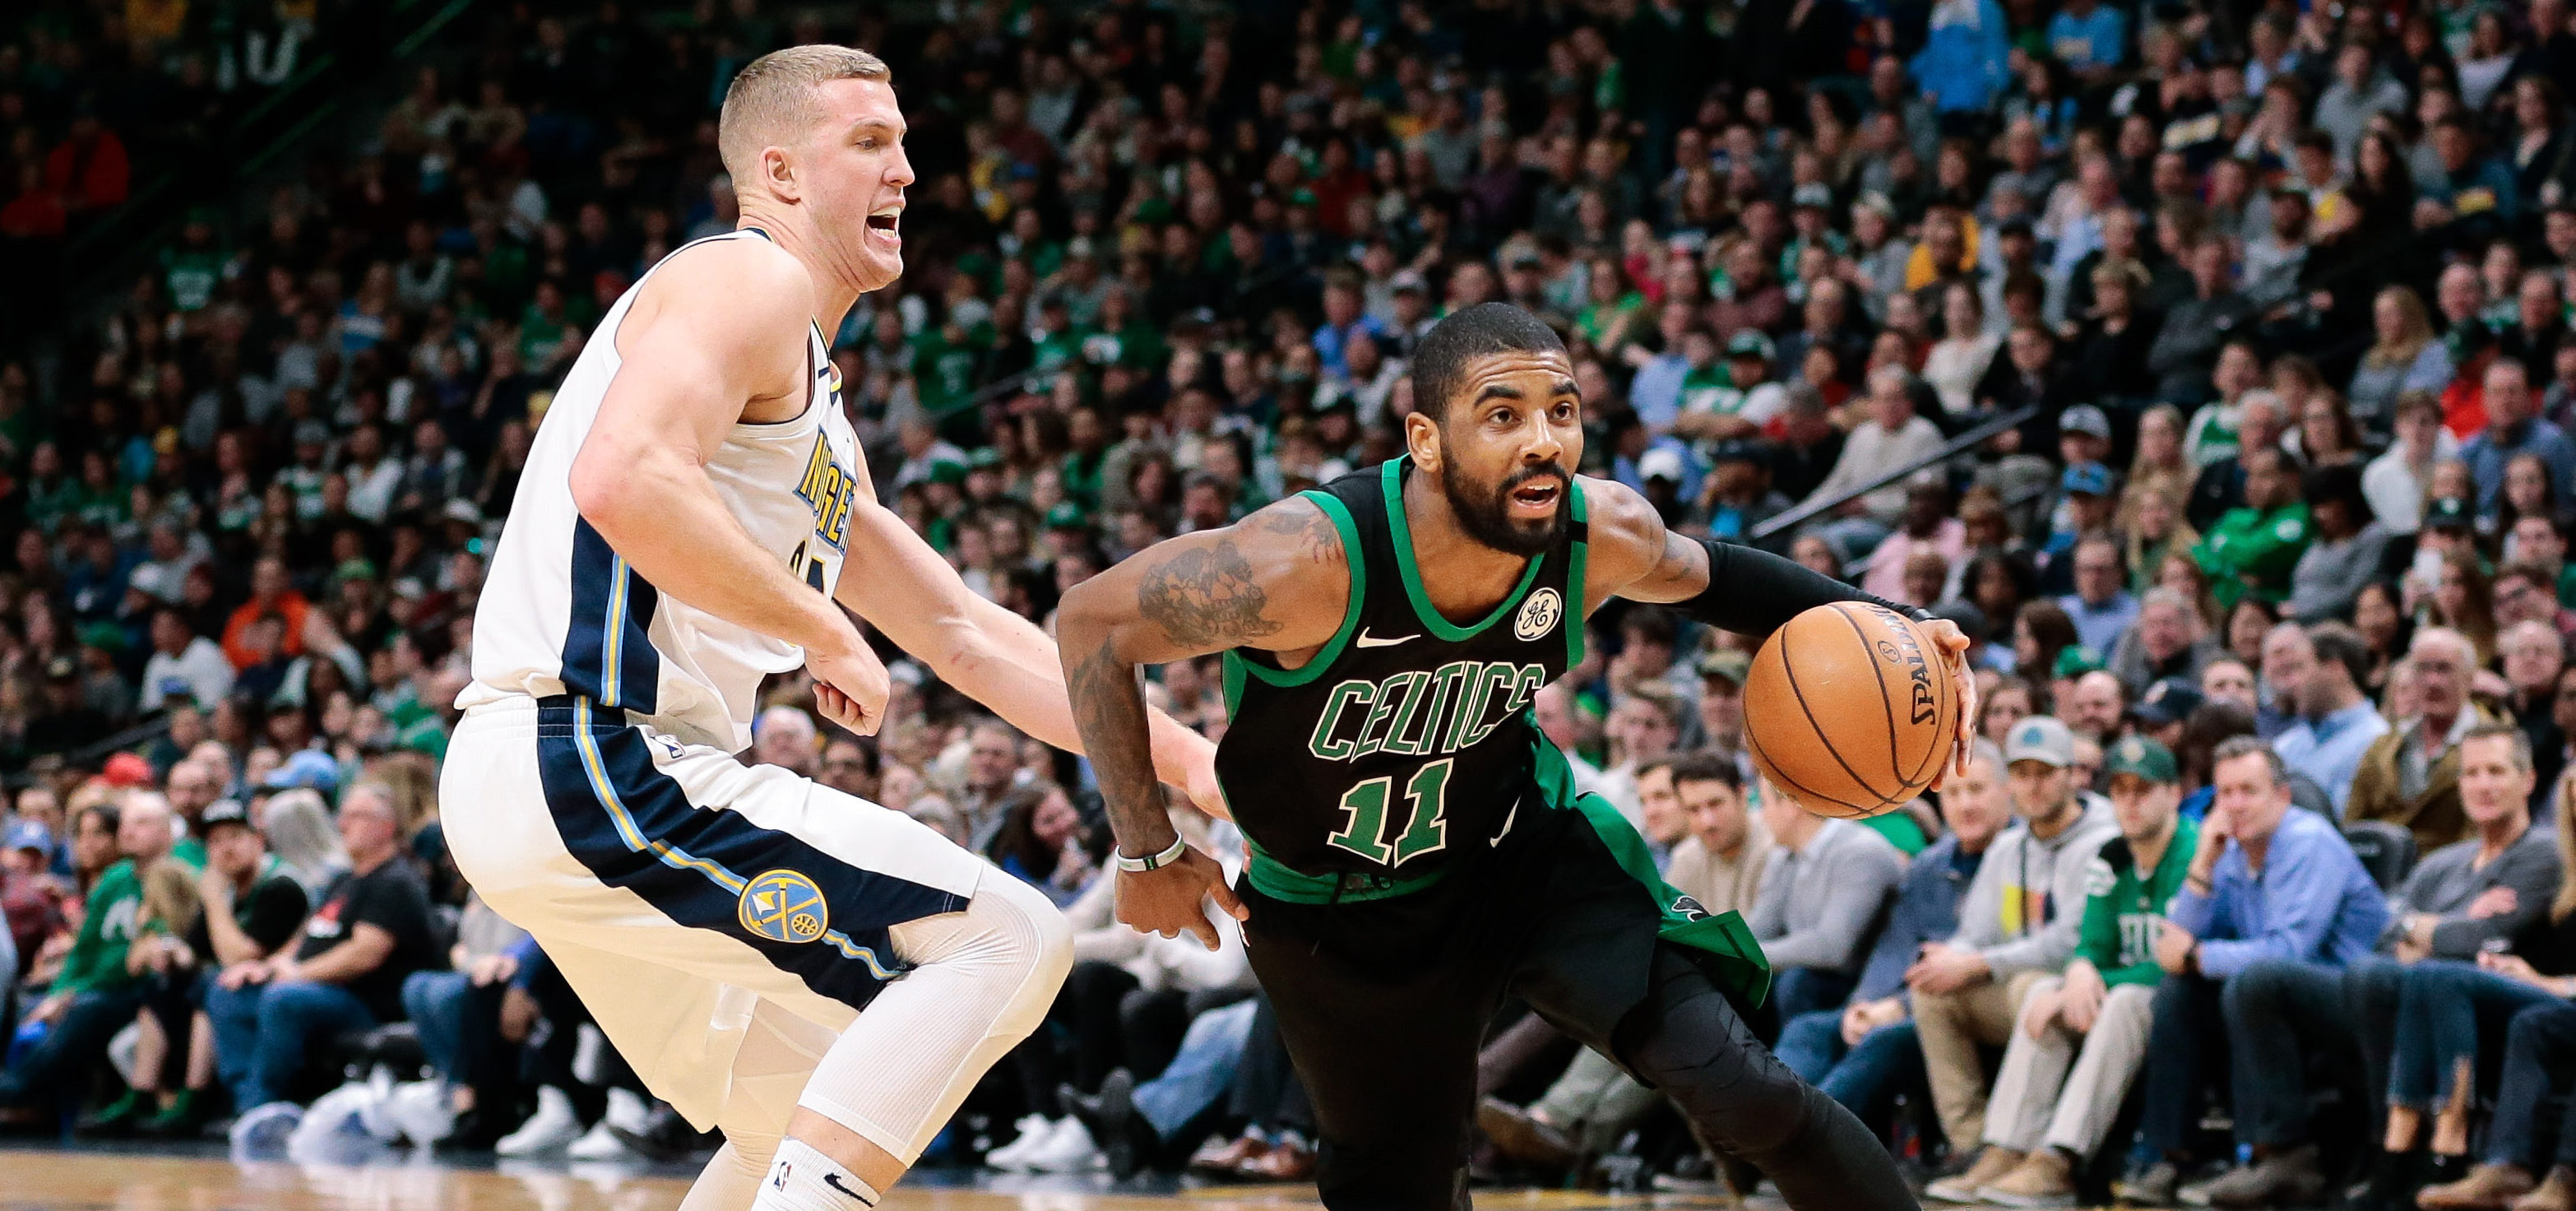 Le duel de la nuit opposera les Celtics aux Nuggets où Denver aura pour ambition de défendre son statut d'Outsider à l'Ouest